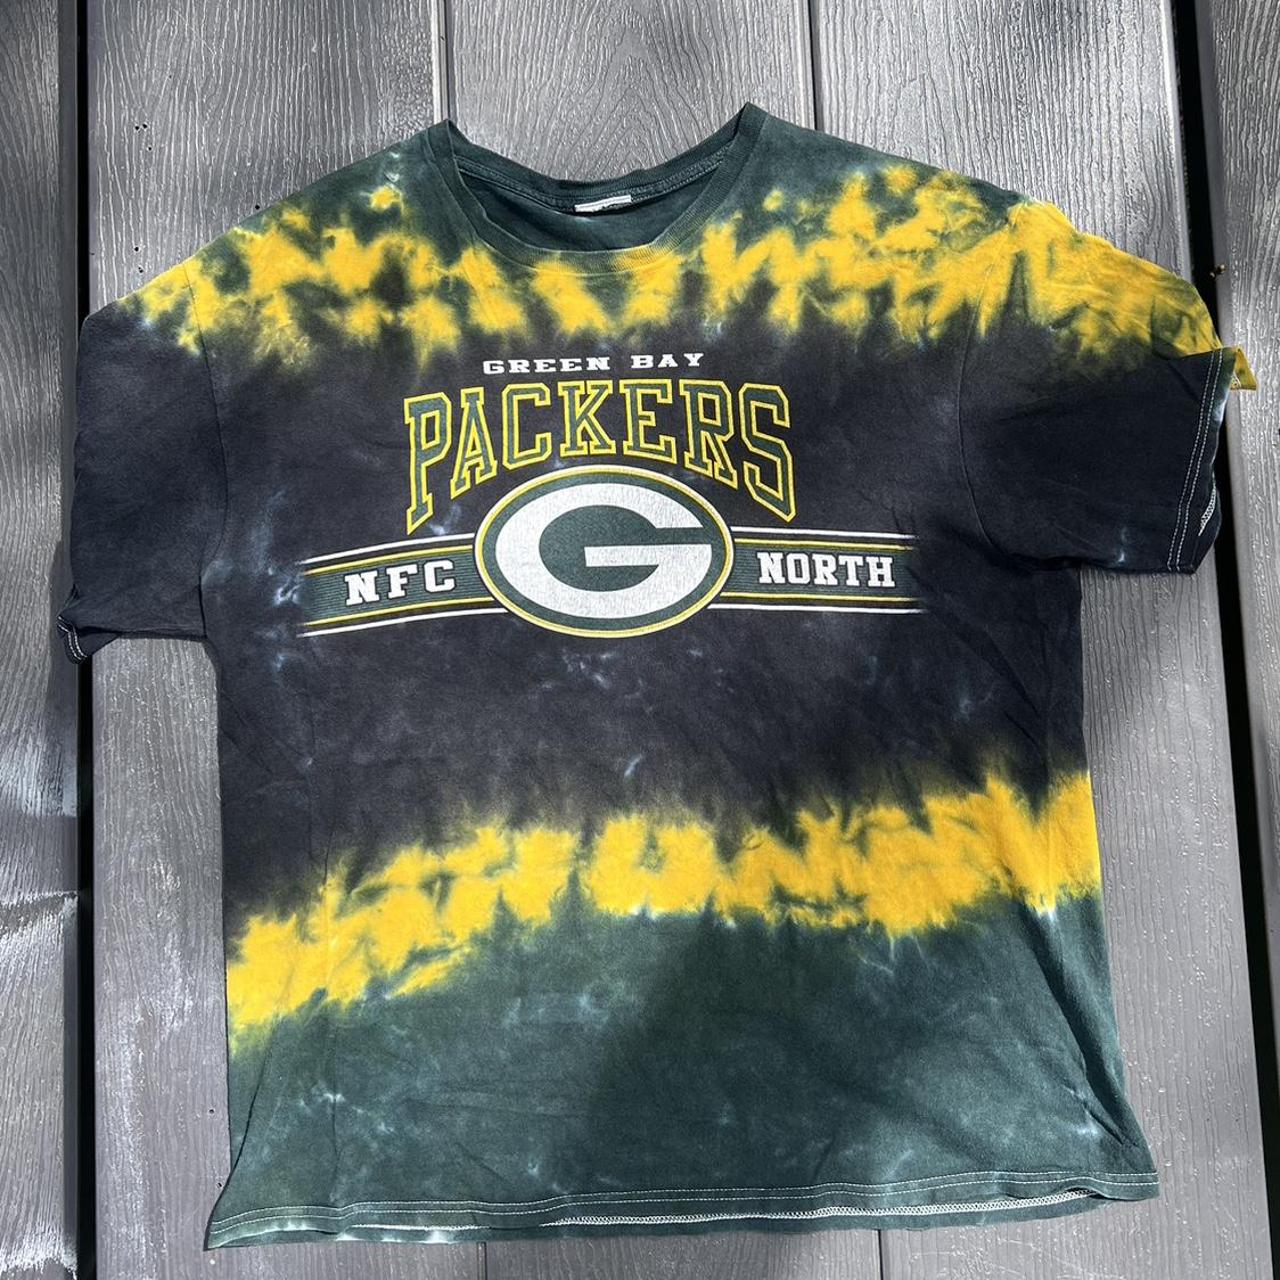 Tie-Dye Green Bag Packers T-Shirt / Tees / GreenBay - Depop